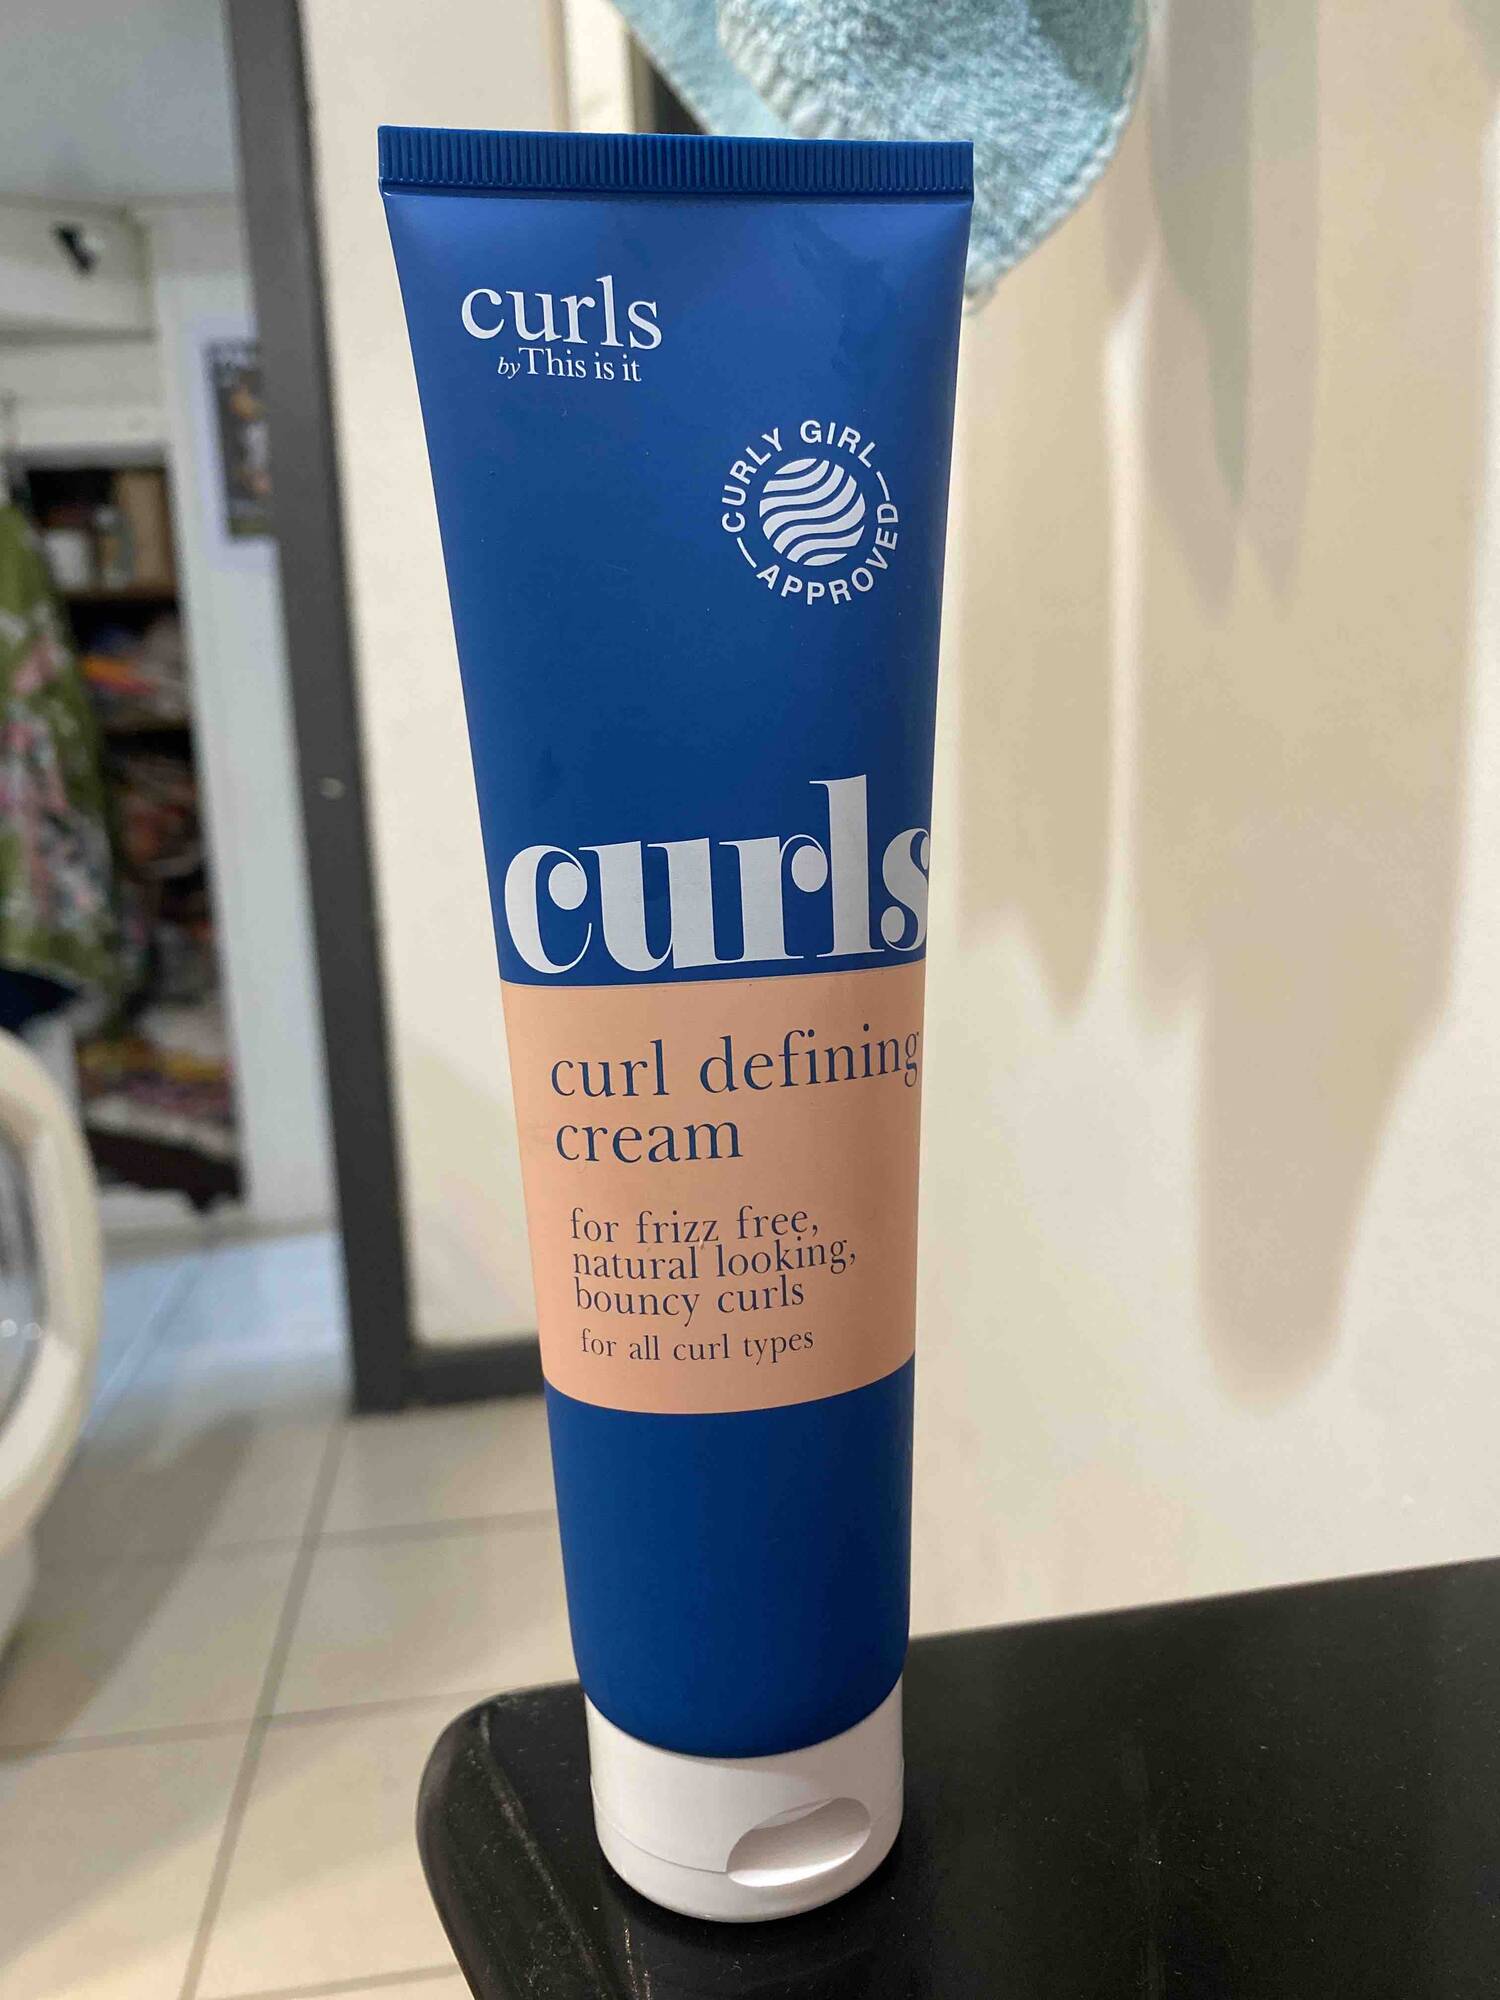 CURLS - Curl defining cream